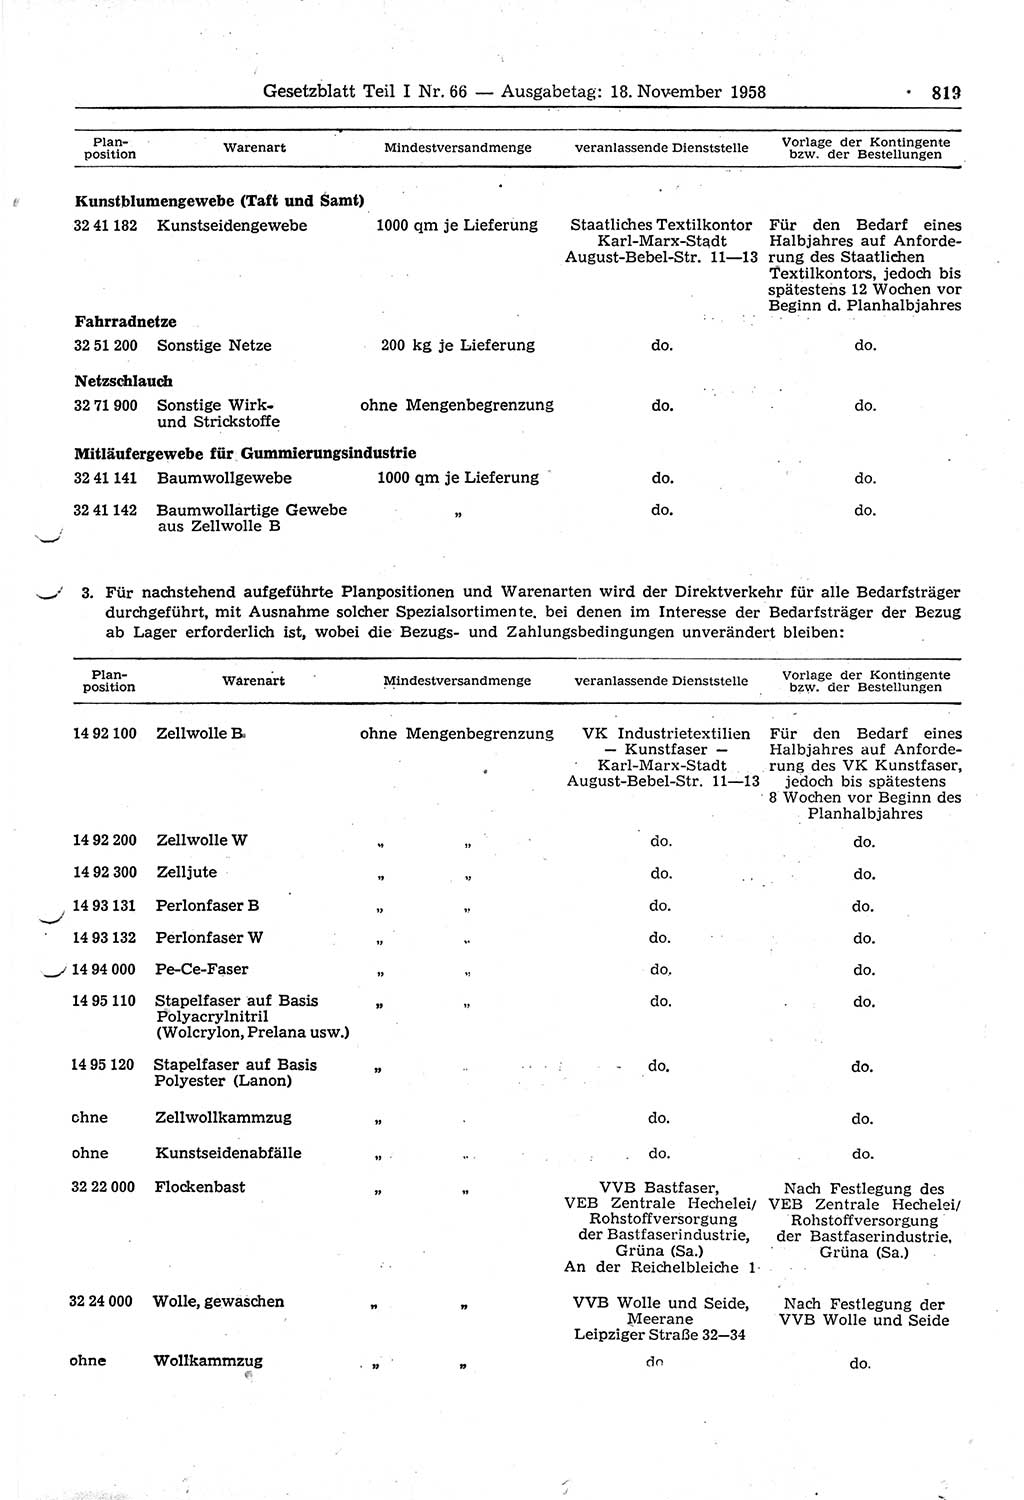 Gesetzblatt (GBl.) der Deutschen Demokratischen Republik (DDR) Teil Ⅰ 1958, Seite 819 (GBl. DDR Ⅰ 1958, S. 819)